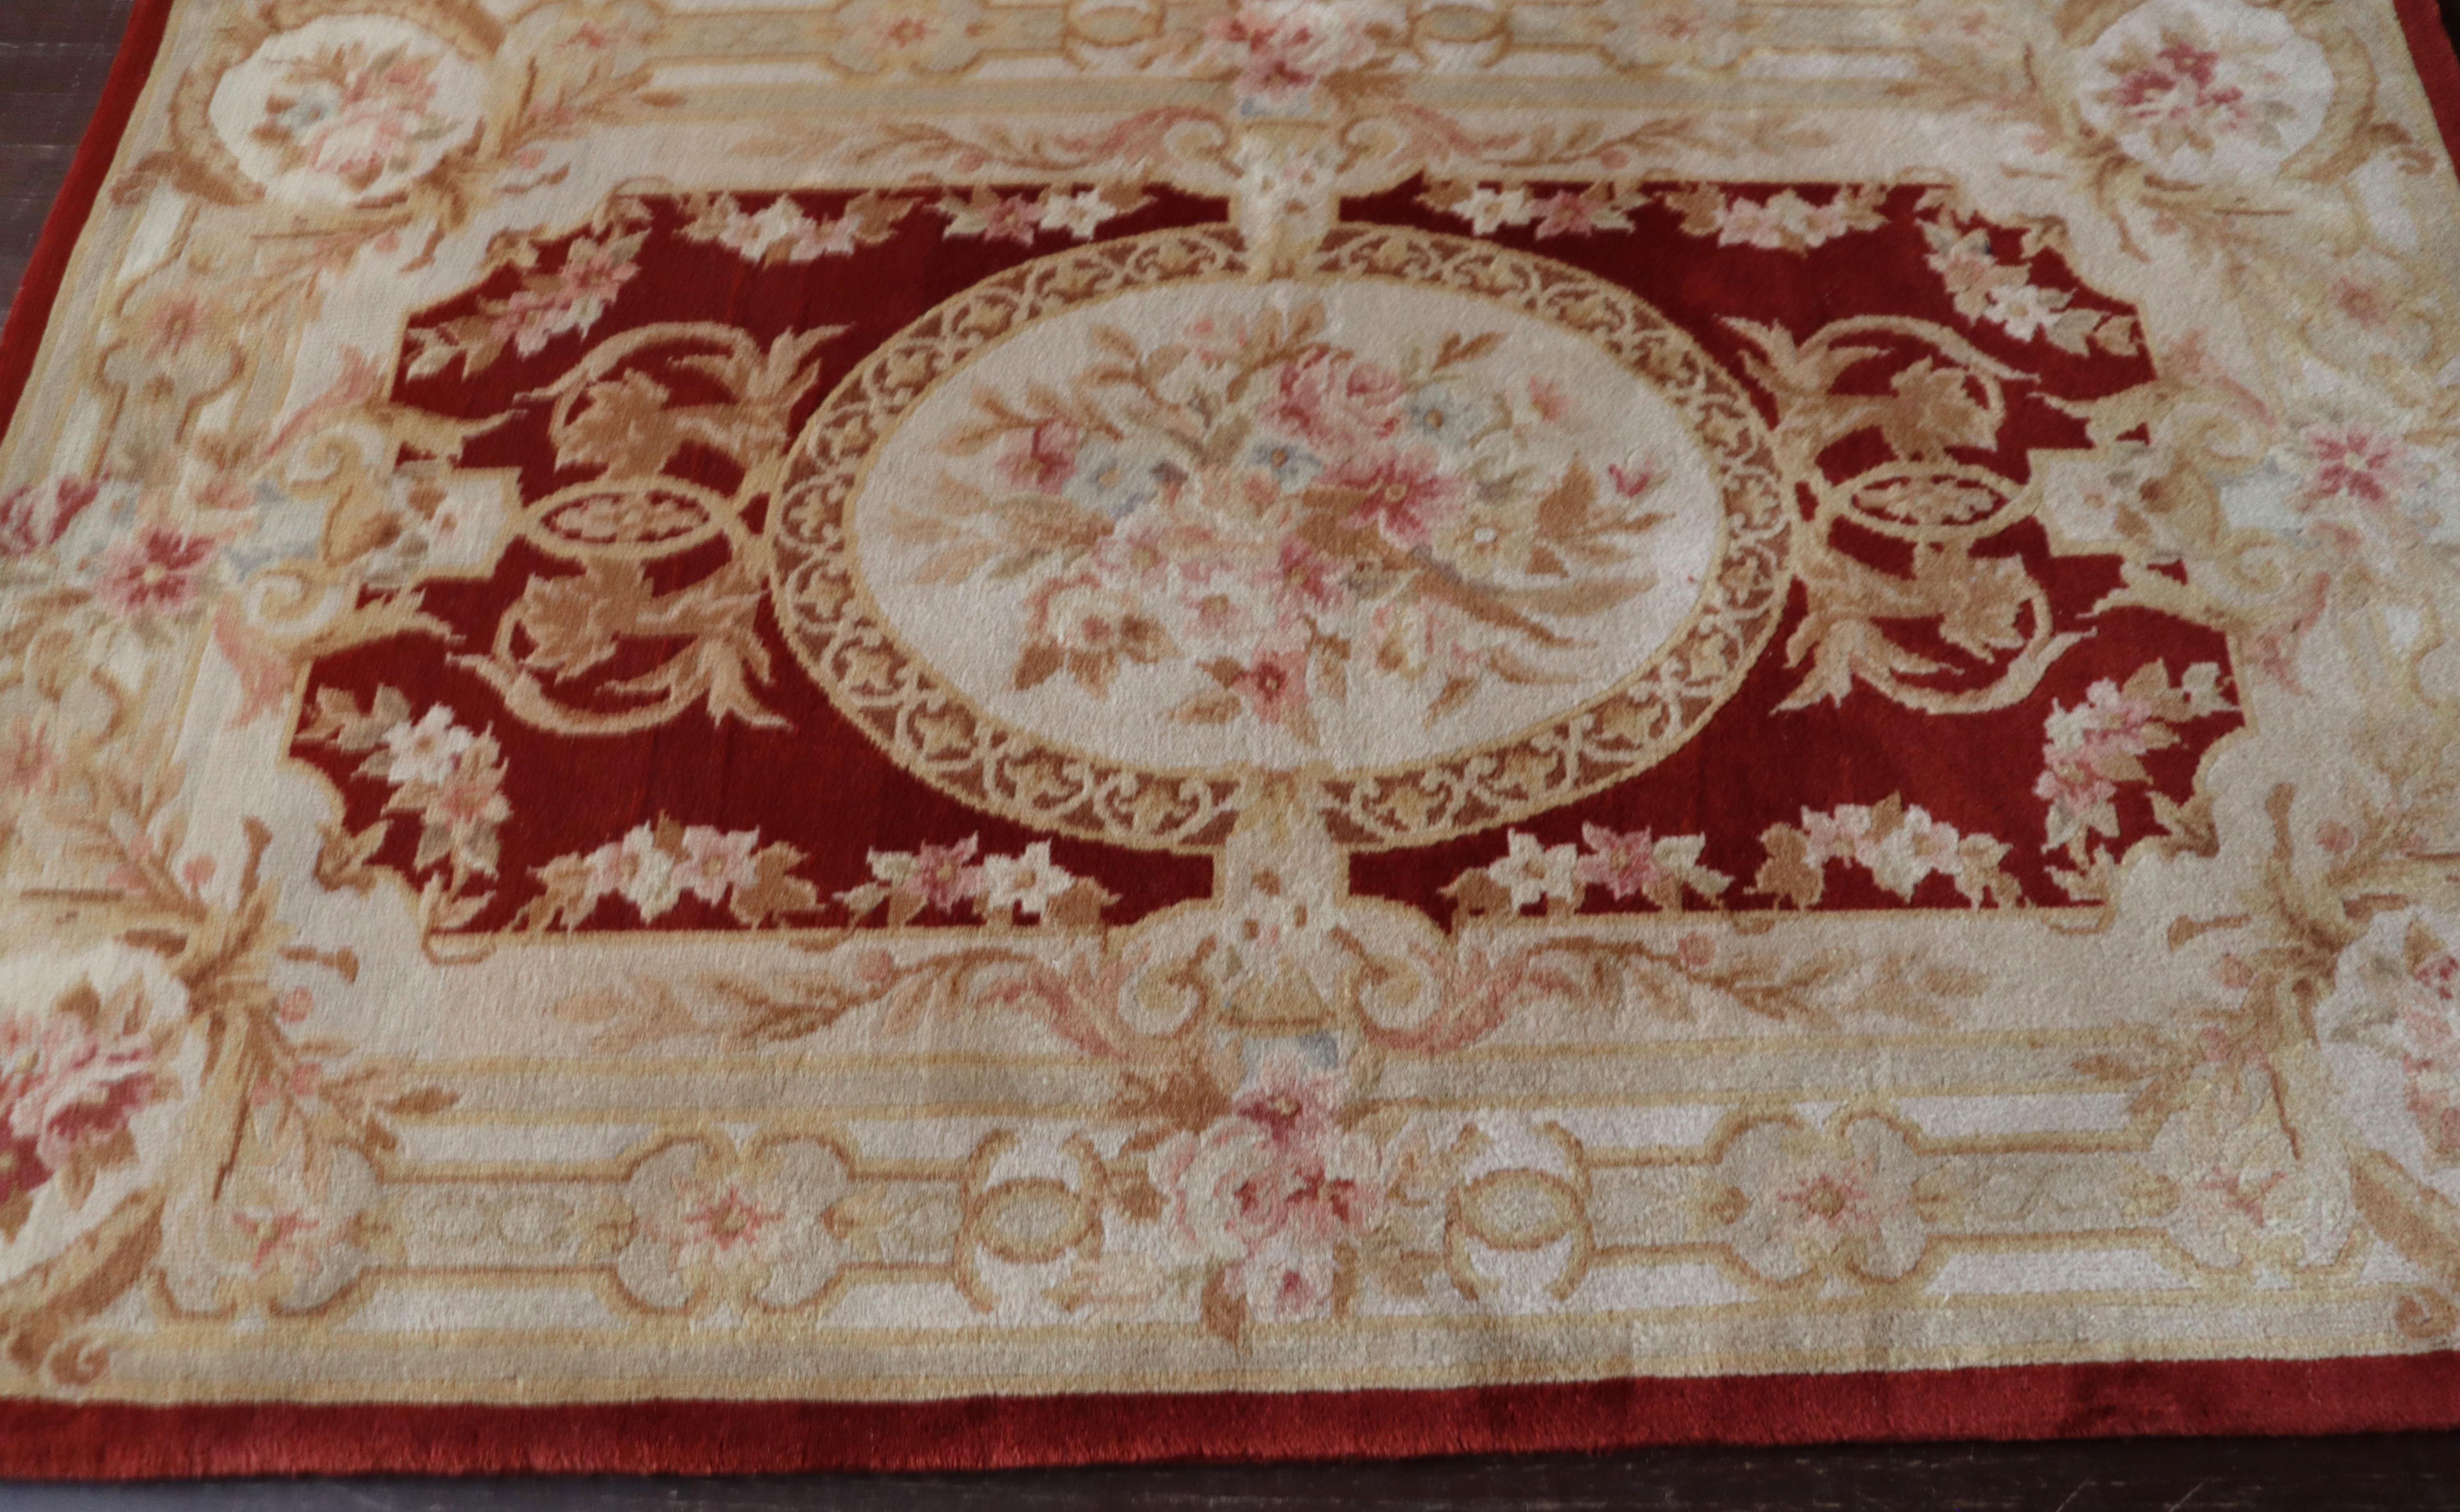 Les tapis de la Savonnerie d'Aubusson sont des reproductions très précises d'un design français d'origine absolue produit du 17e au 19e siècle dans les manufactures d'Aubusson, qui ont donné leur nom à ces tapis. À l'origine, ils étaient produits